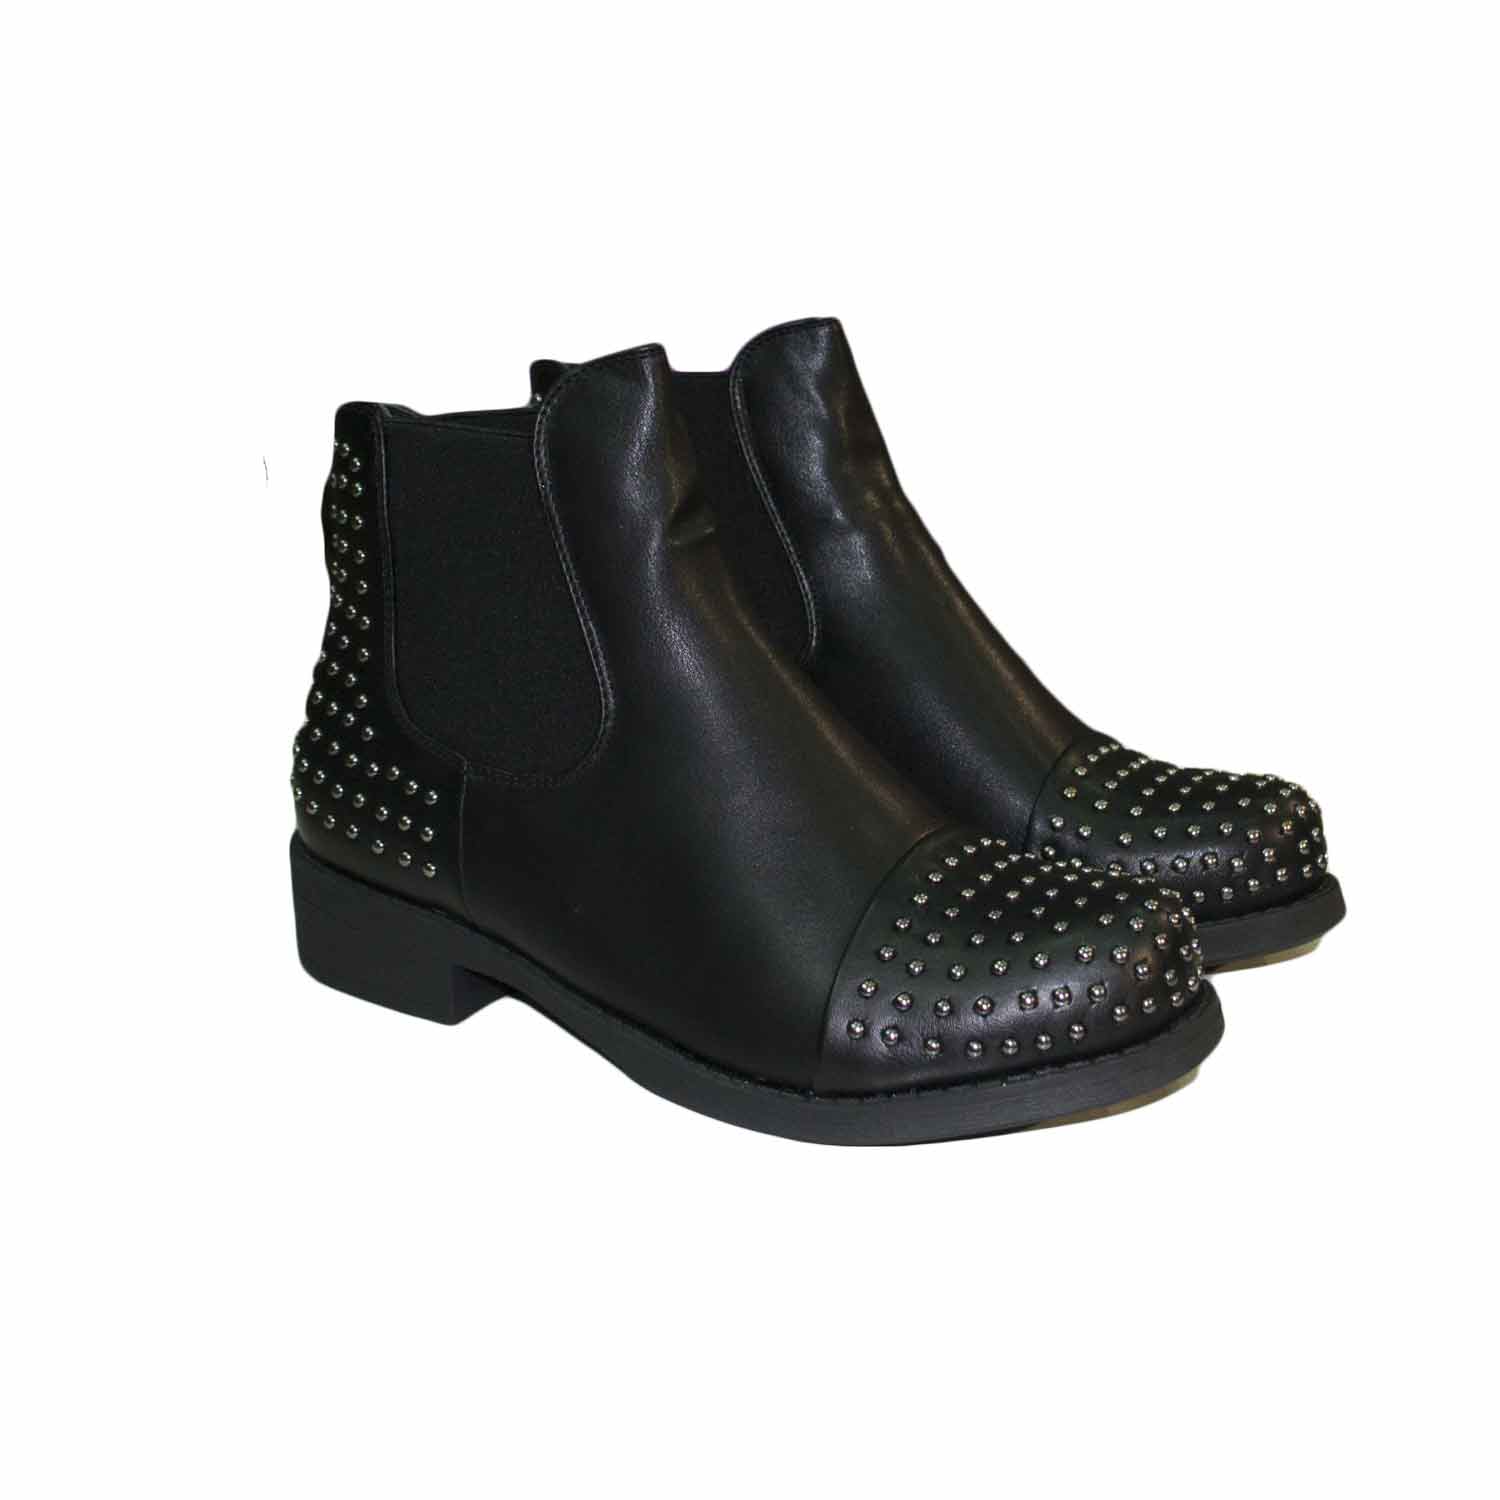 Scarpe donna stivaletti nero con elastico bassi con borchie dorate avanti e  sul retro donna stivaletti Malu Shoes | MaluShoes